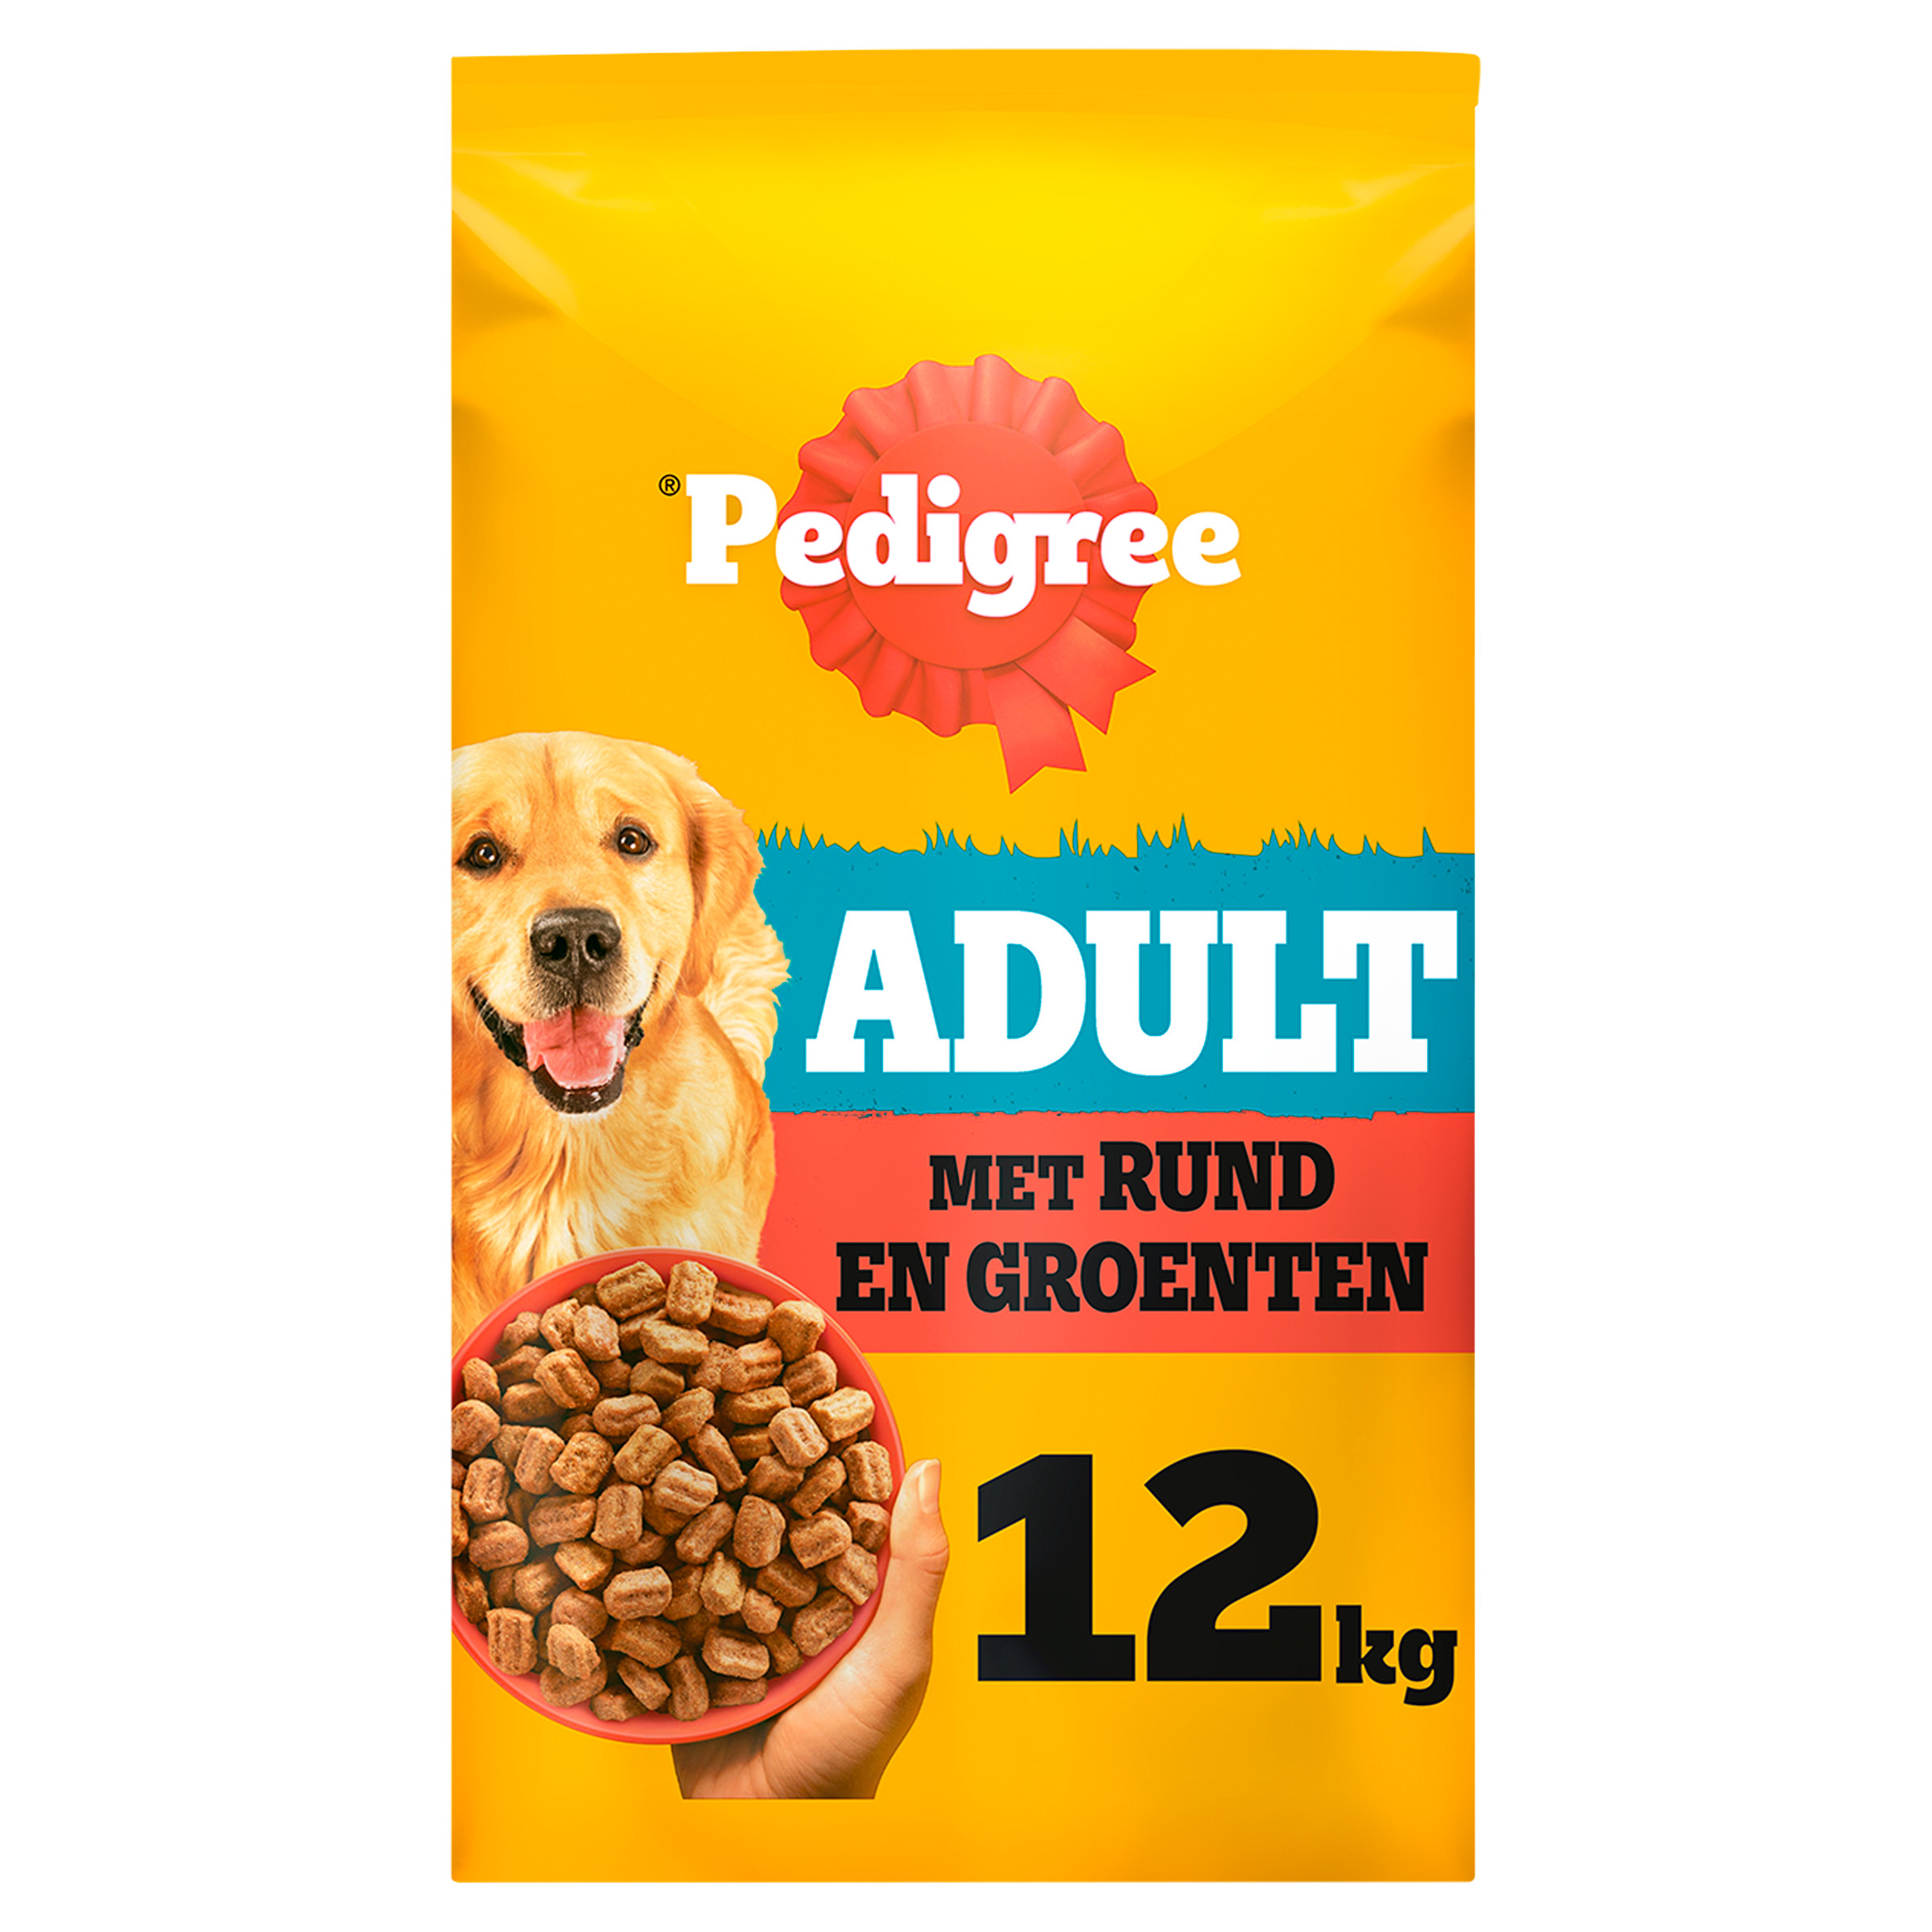 Pedigree Adult met rund & groenten hondenvoer relaunch